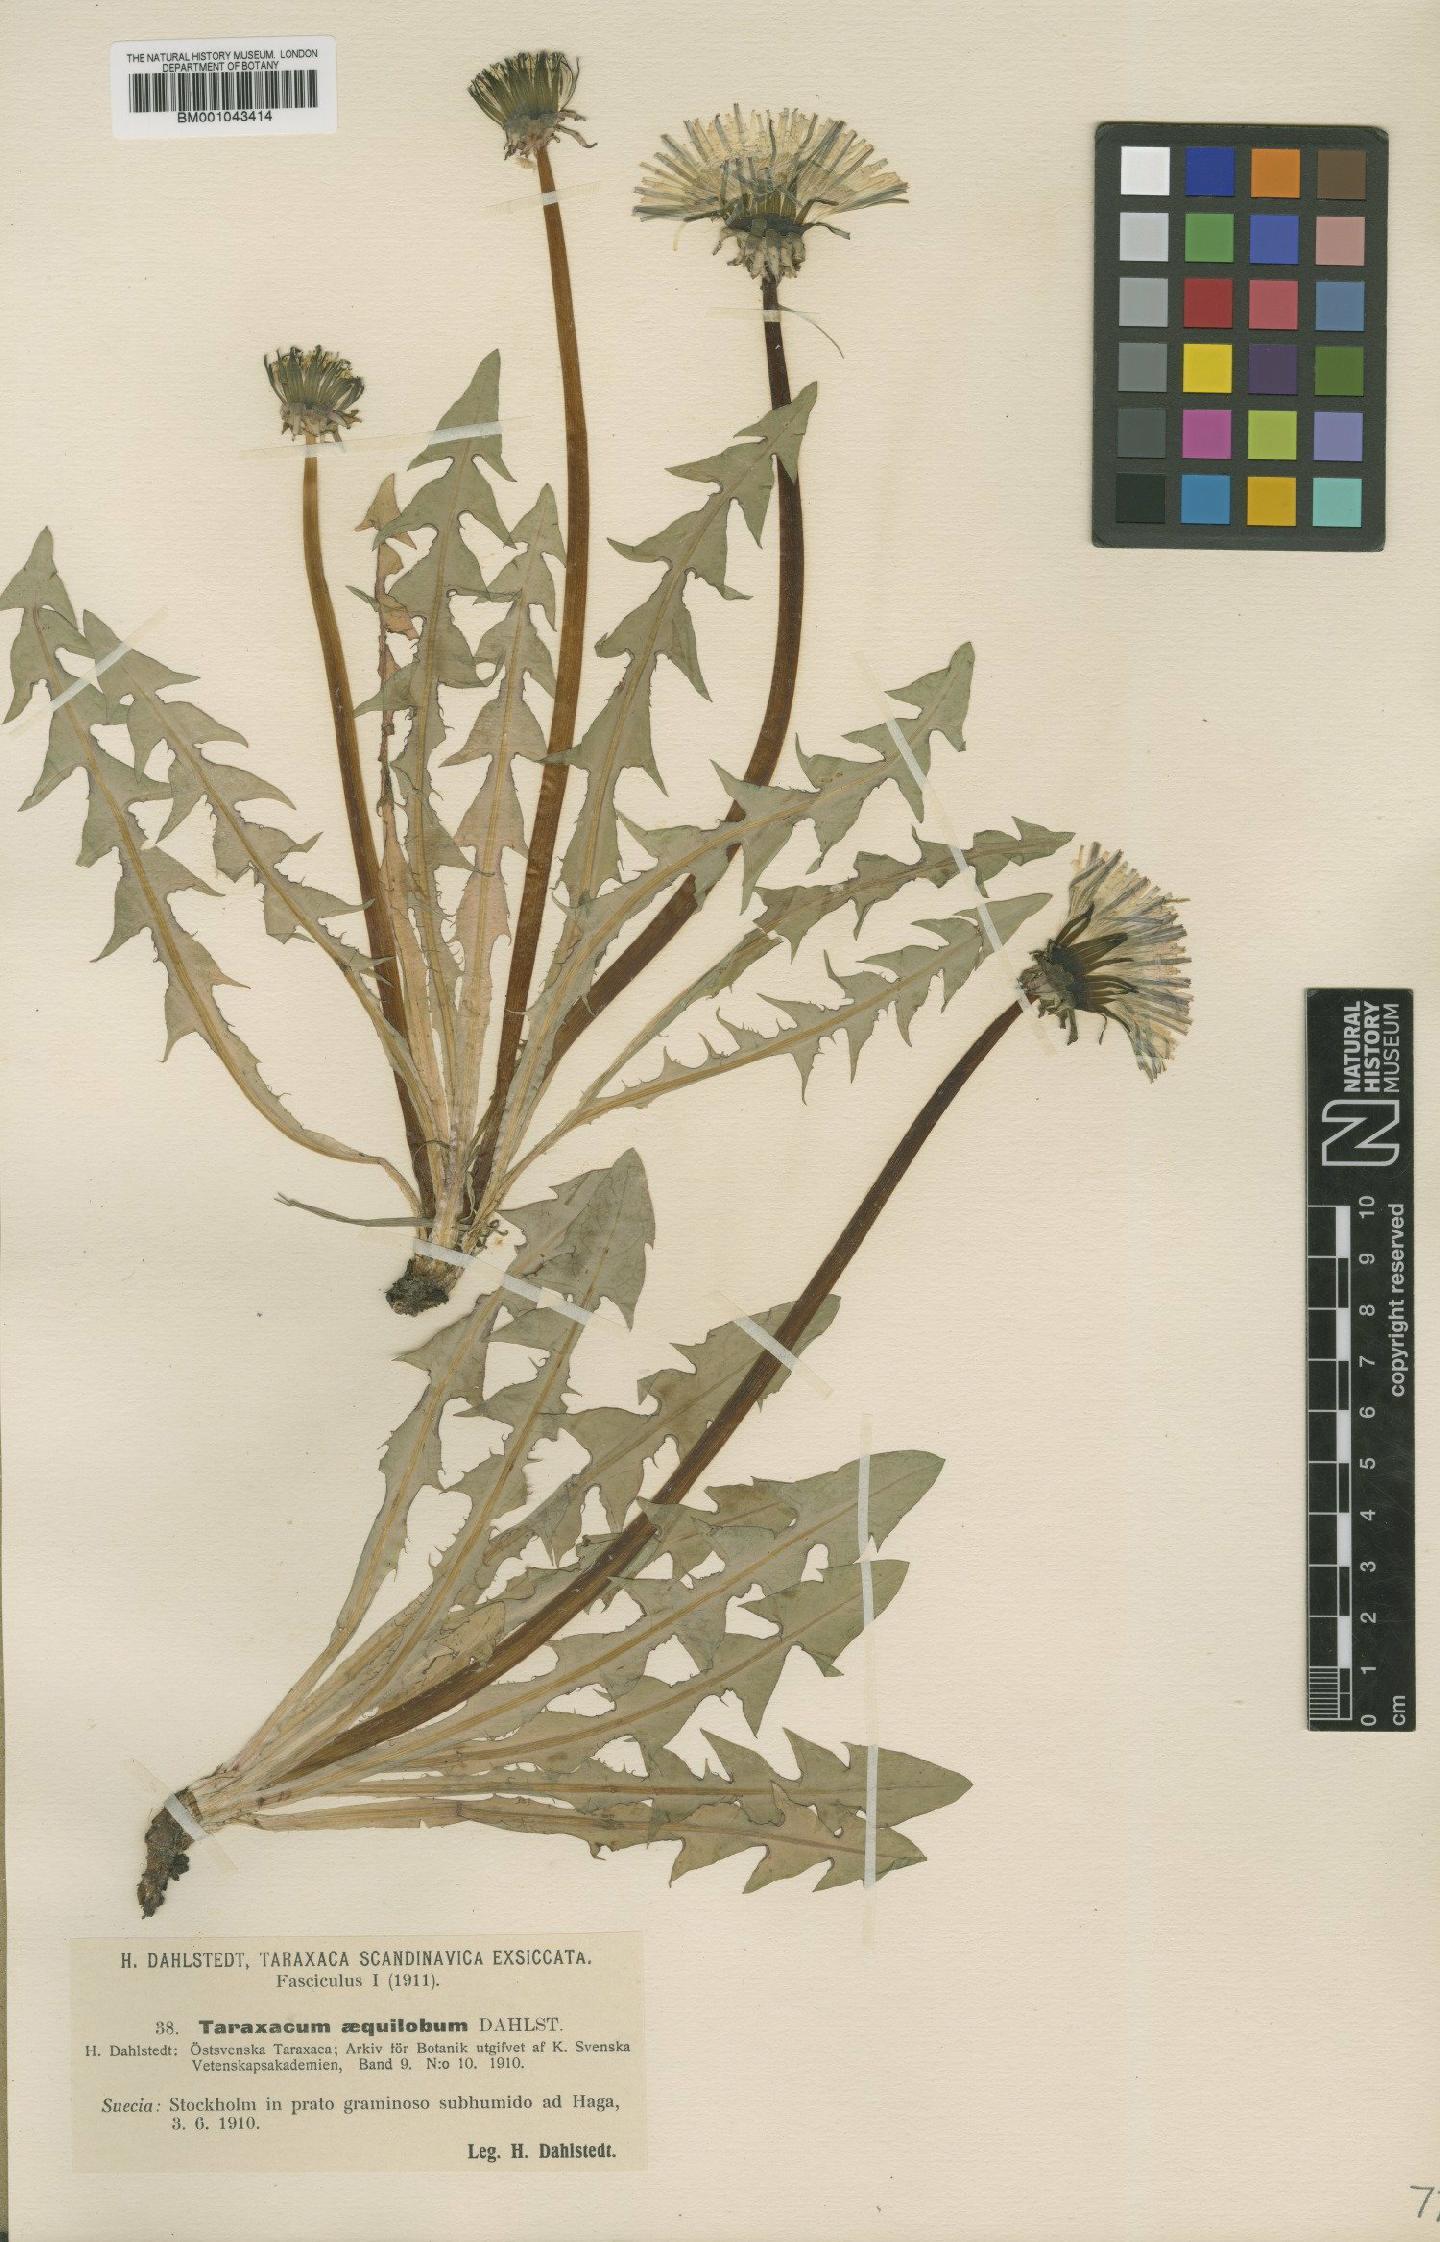 To NHMUK collection (Taraxacum aequilobum Dahlst; Type; NHMUK:ecatalogue:1998061)